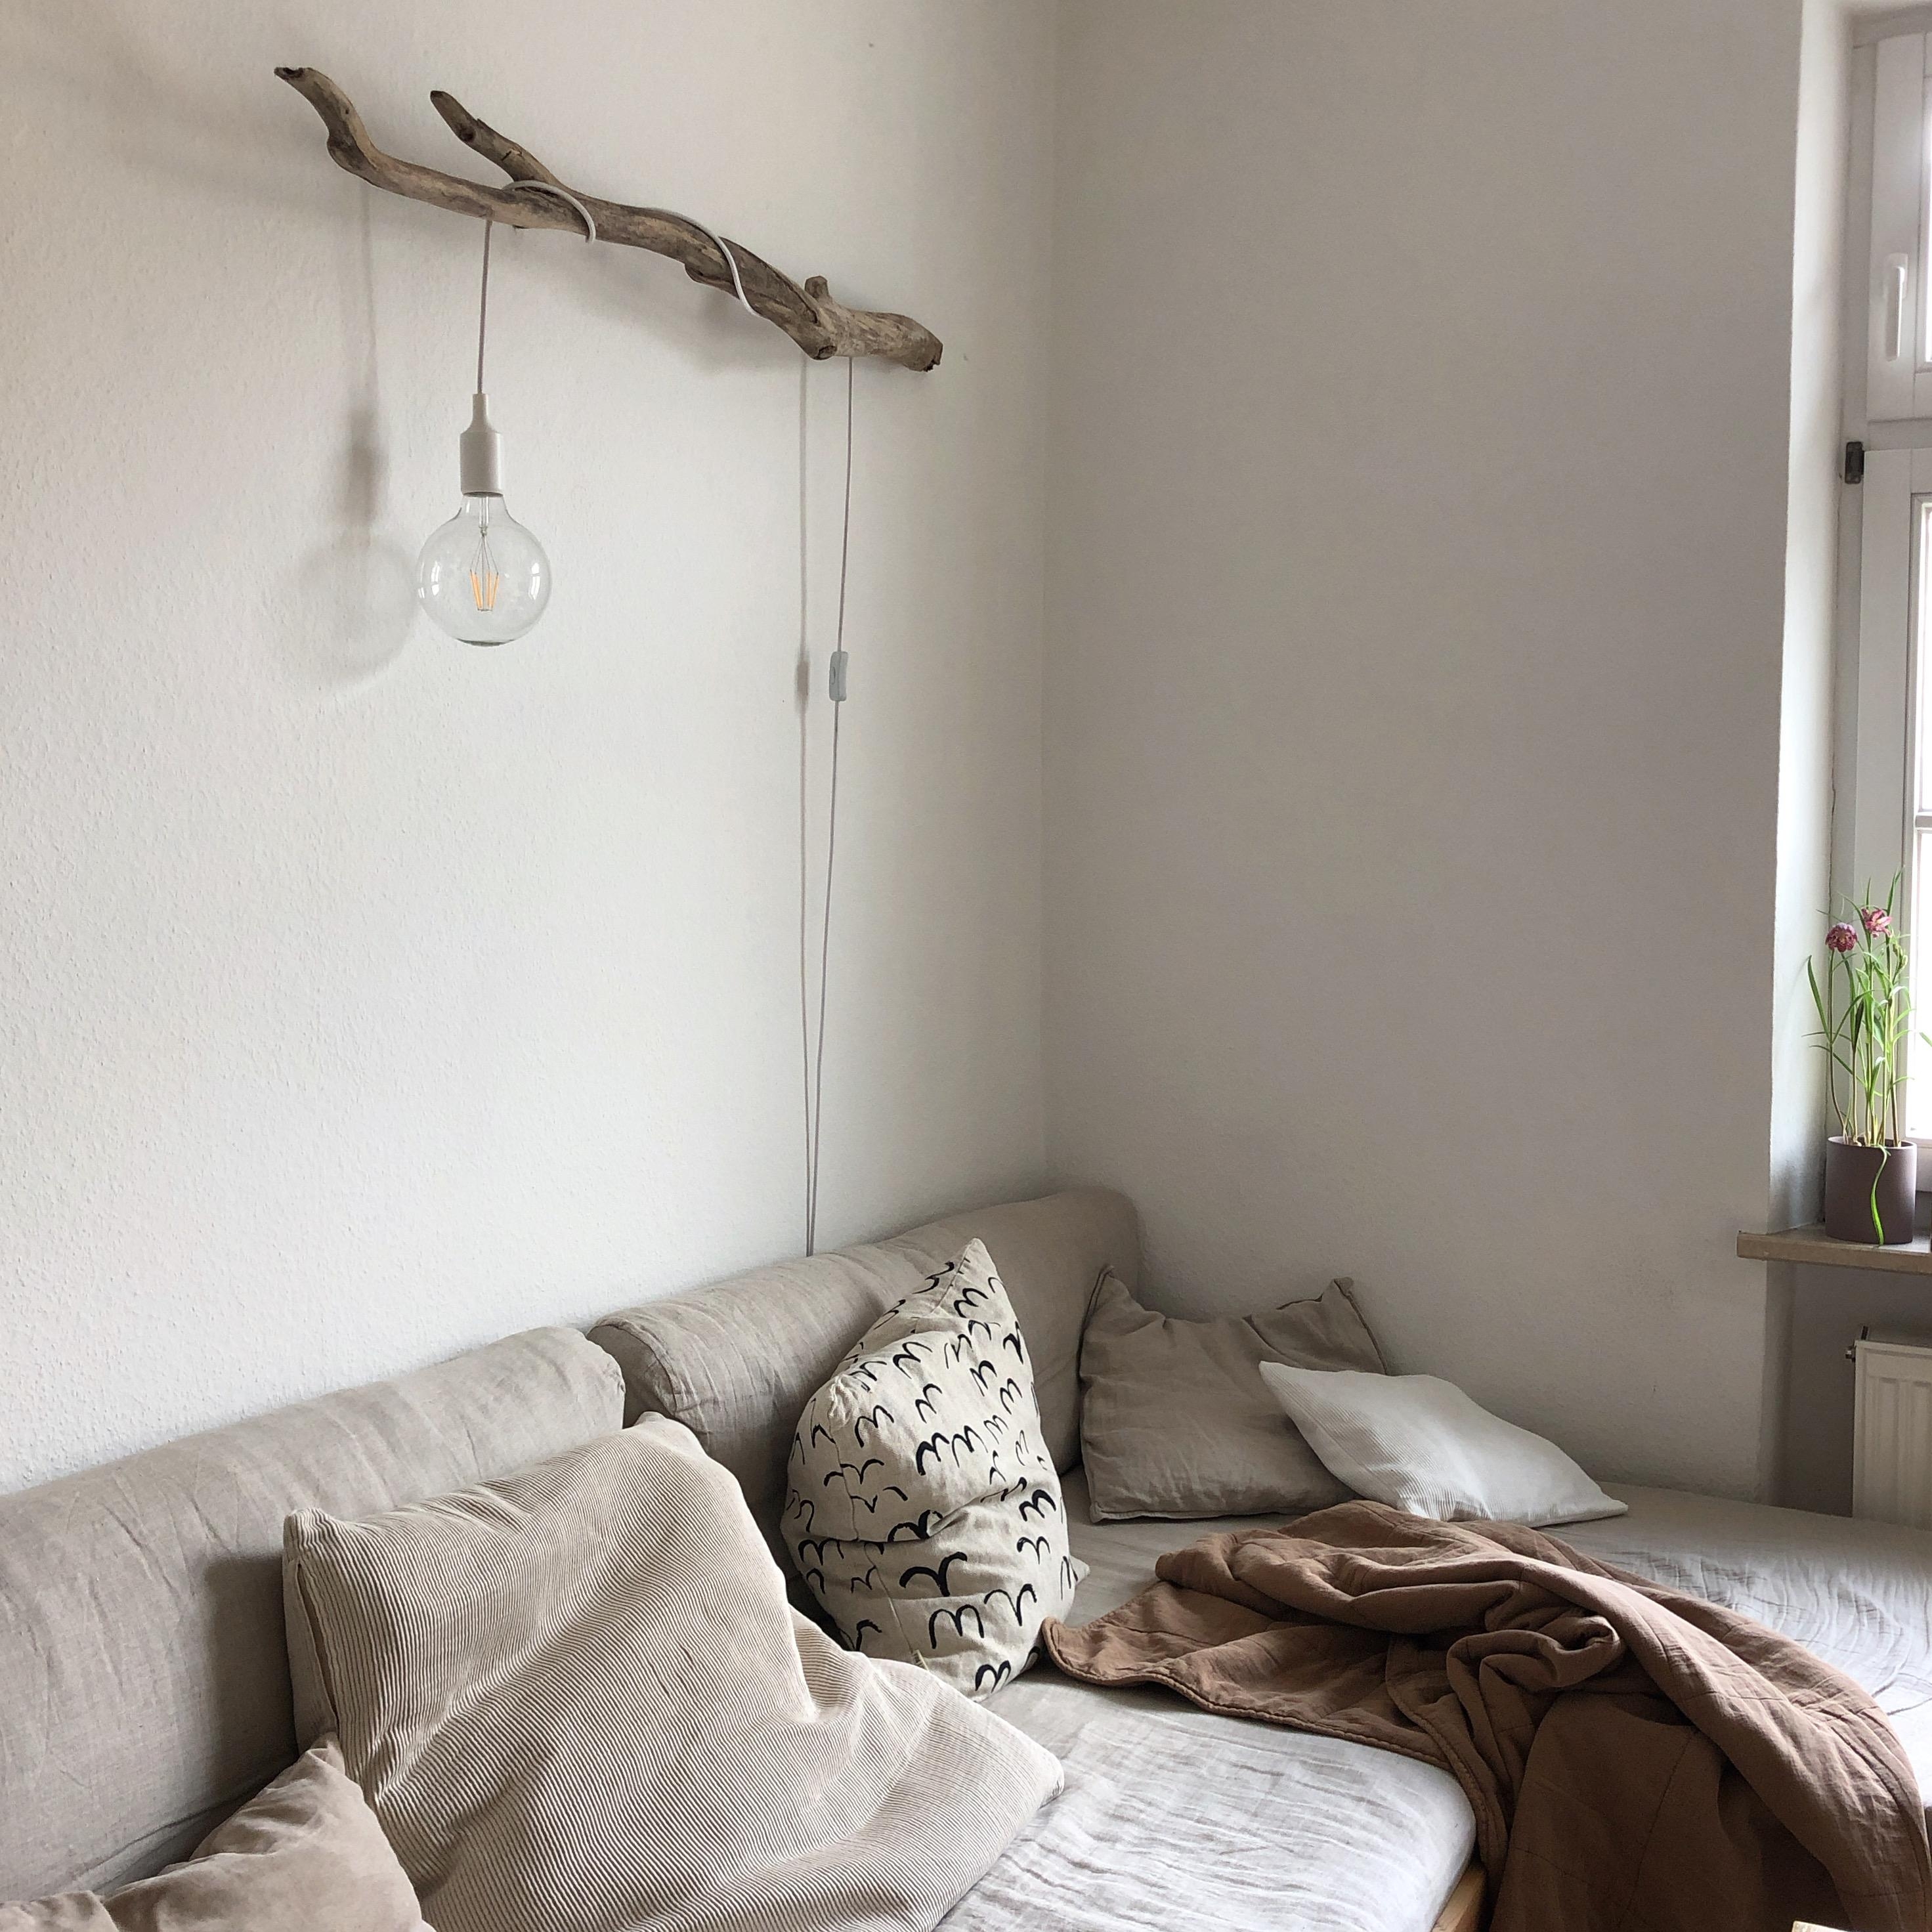 Guten Morgen aus dem #wohnzimmer _ #treibholzlampe #diy #sofa #couch 